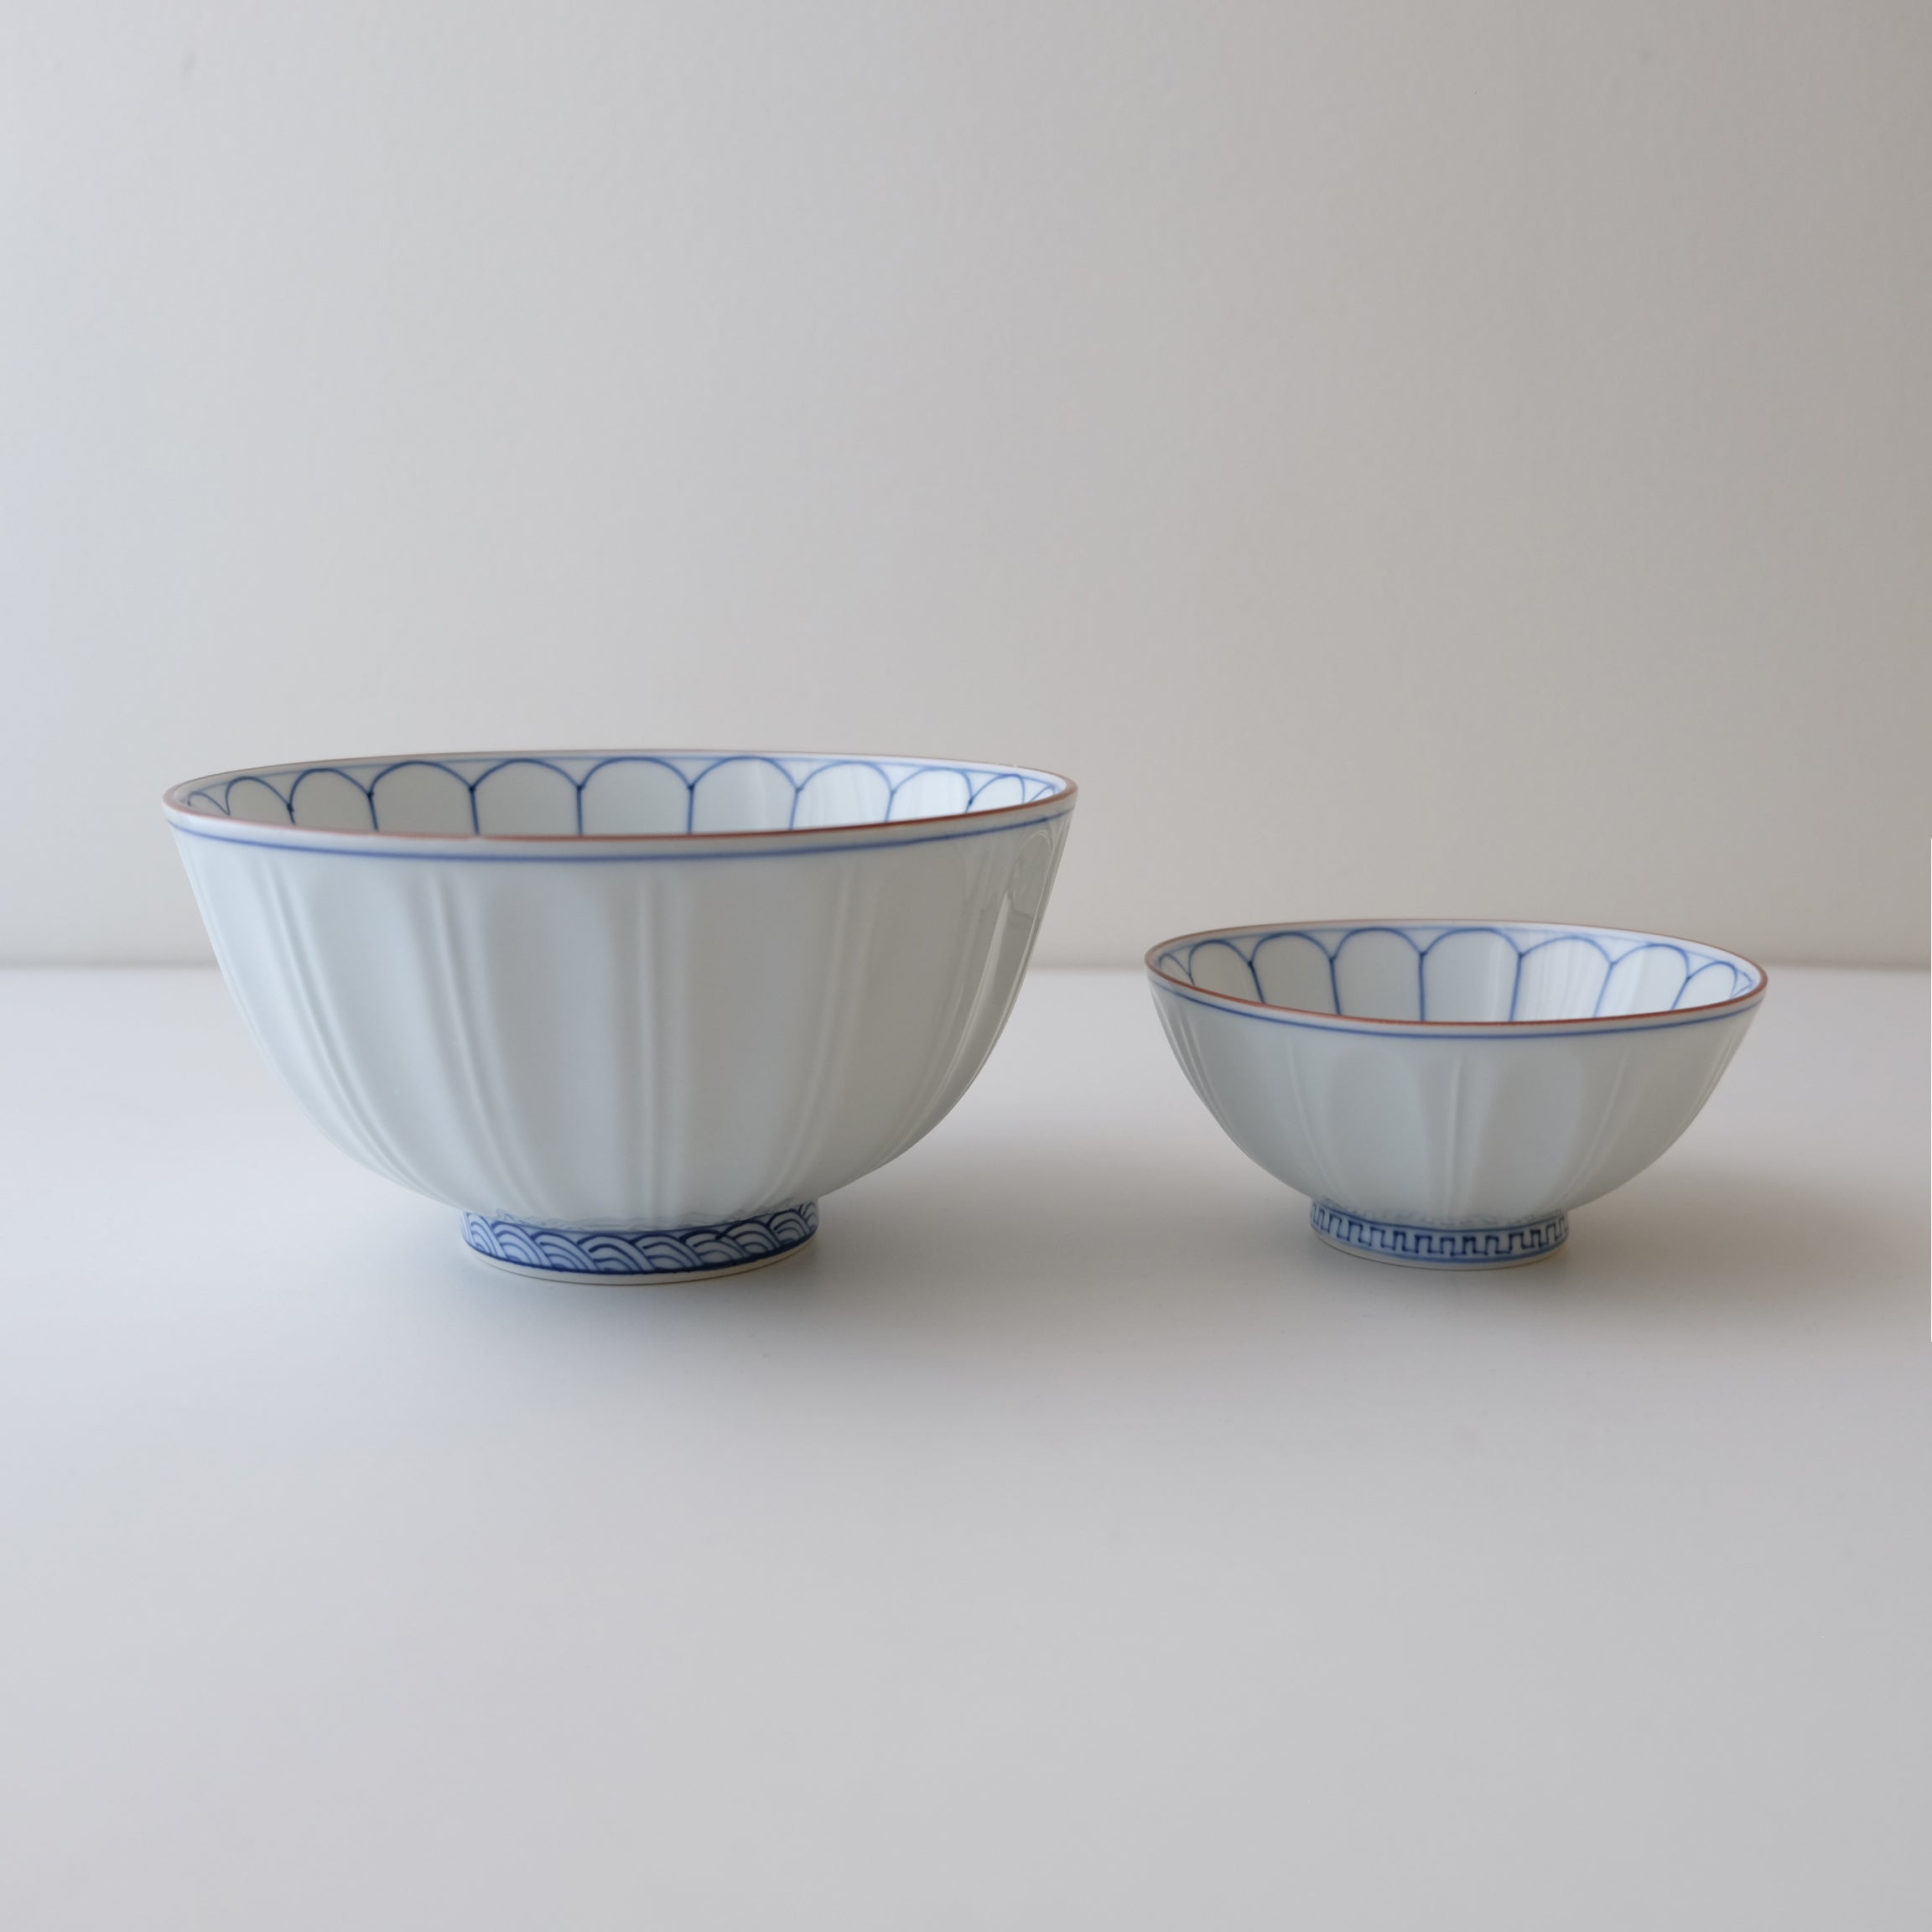 Shobido Honten-Chrysanthemum bowls (2 sizes) – We Round